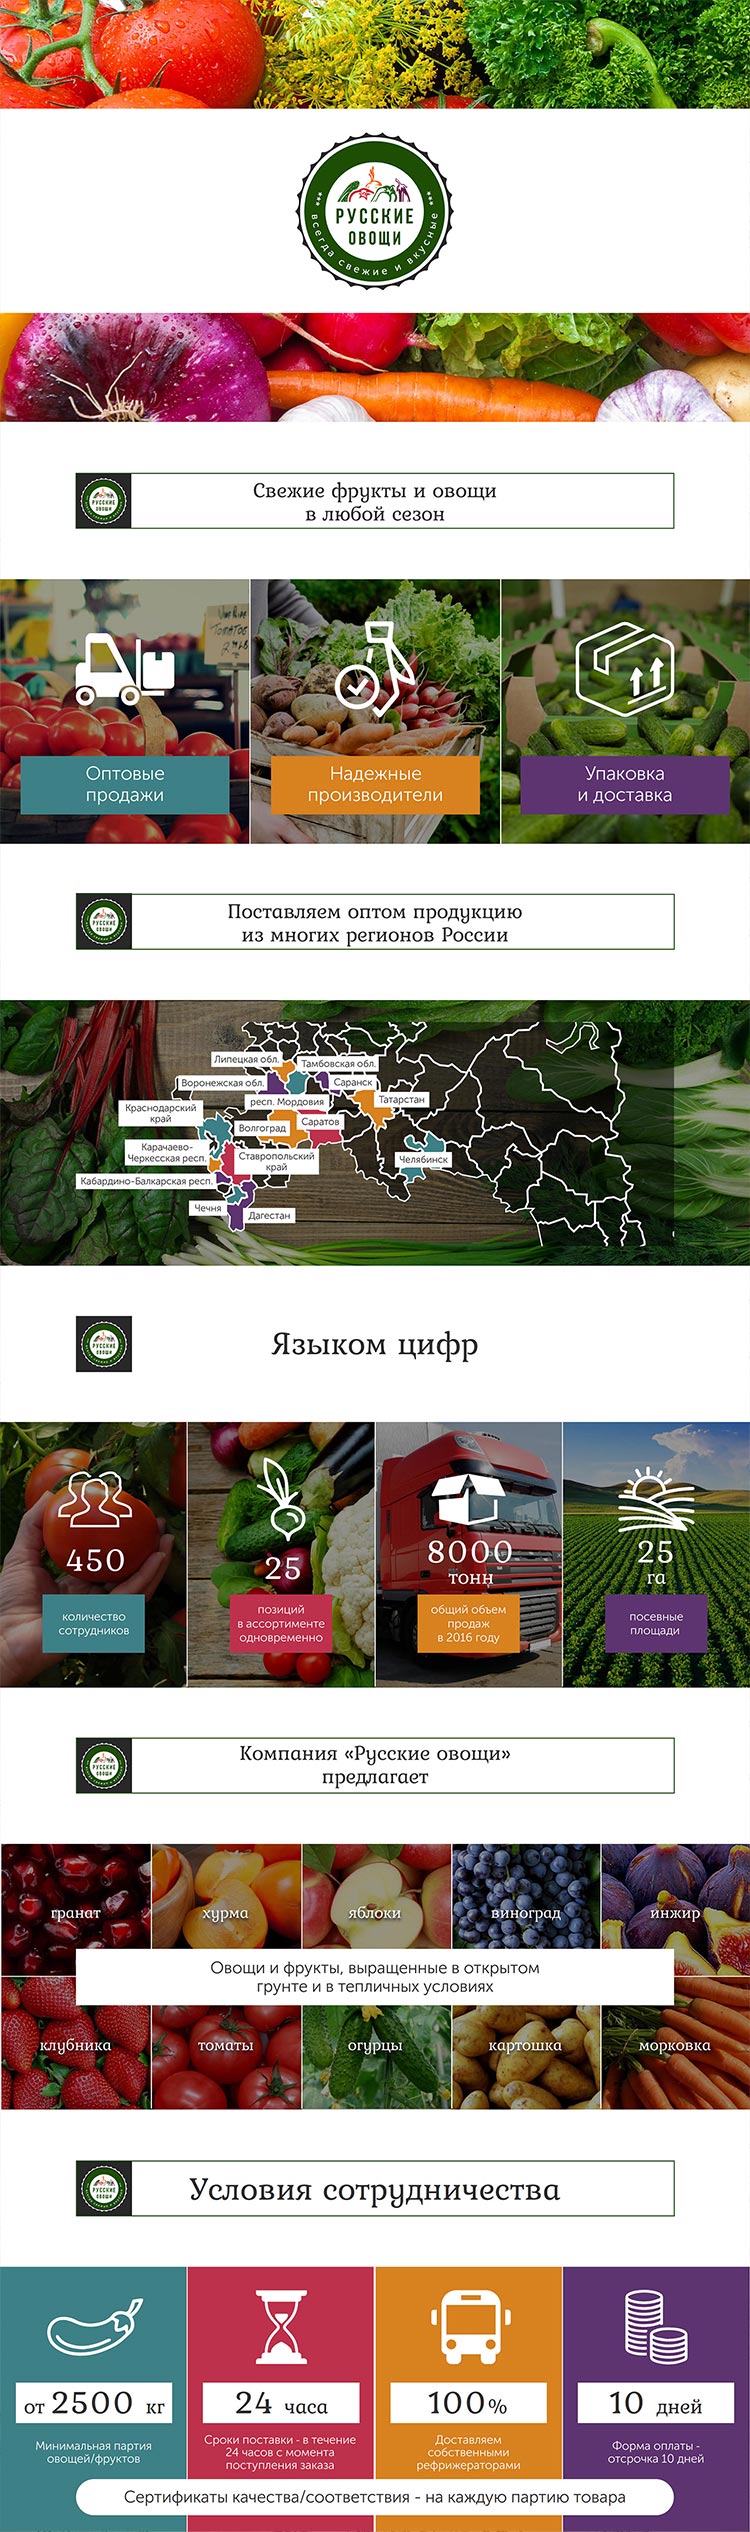 Презентации поставщика продуктов питания «Русские овощи» для клиента